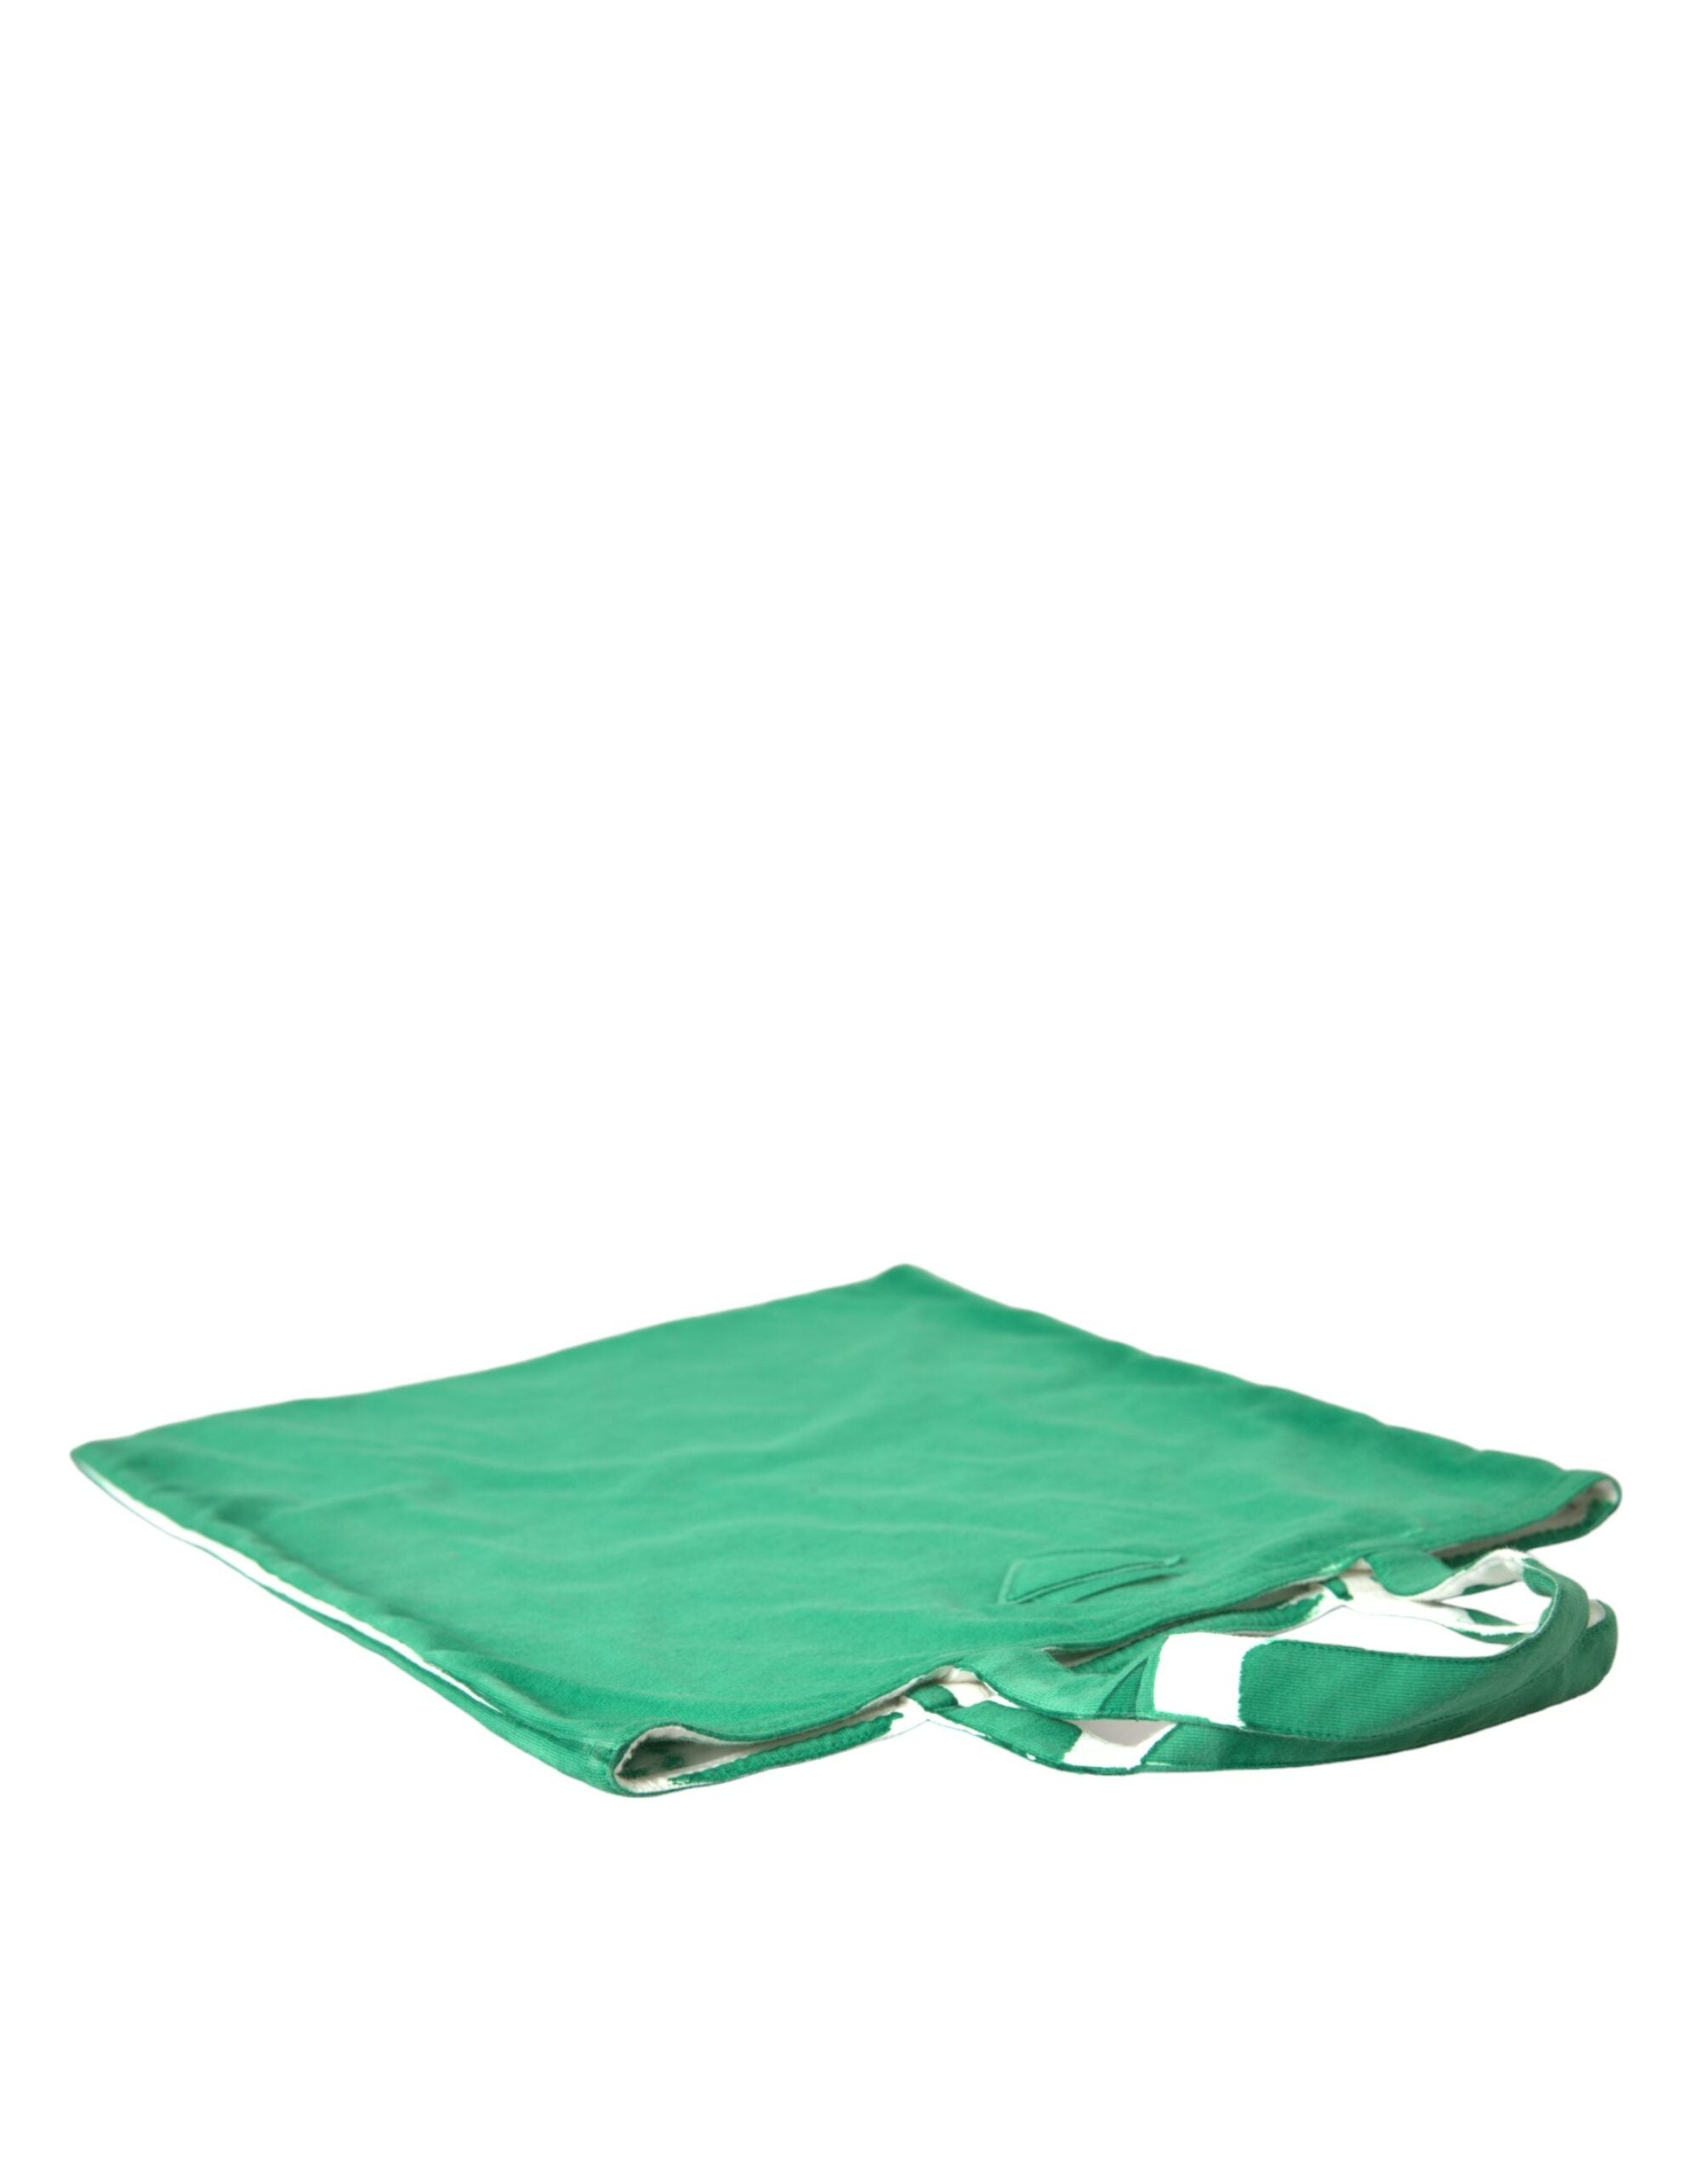 Prada Elegante grüne Einkaufstasche aus Stoff